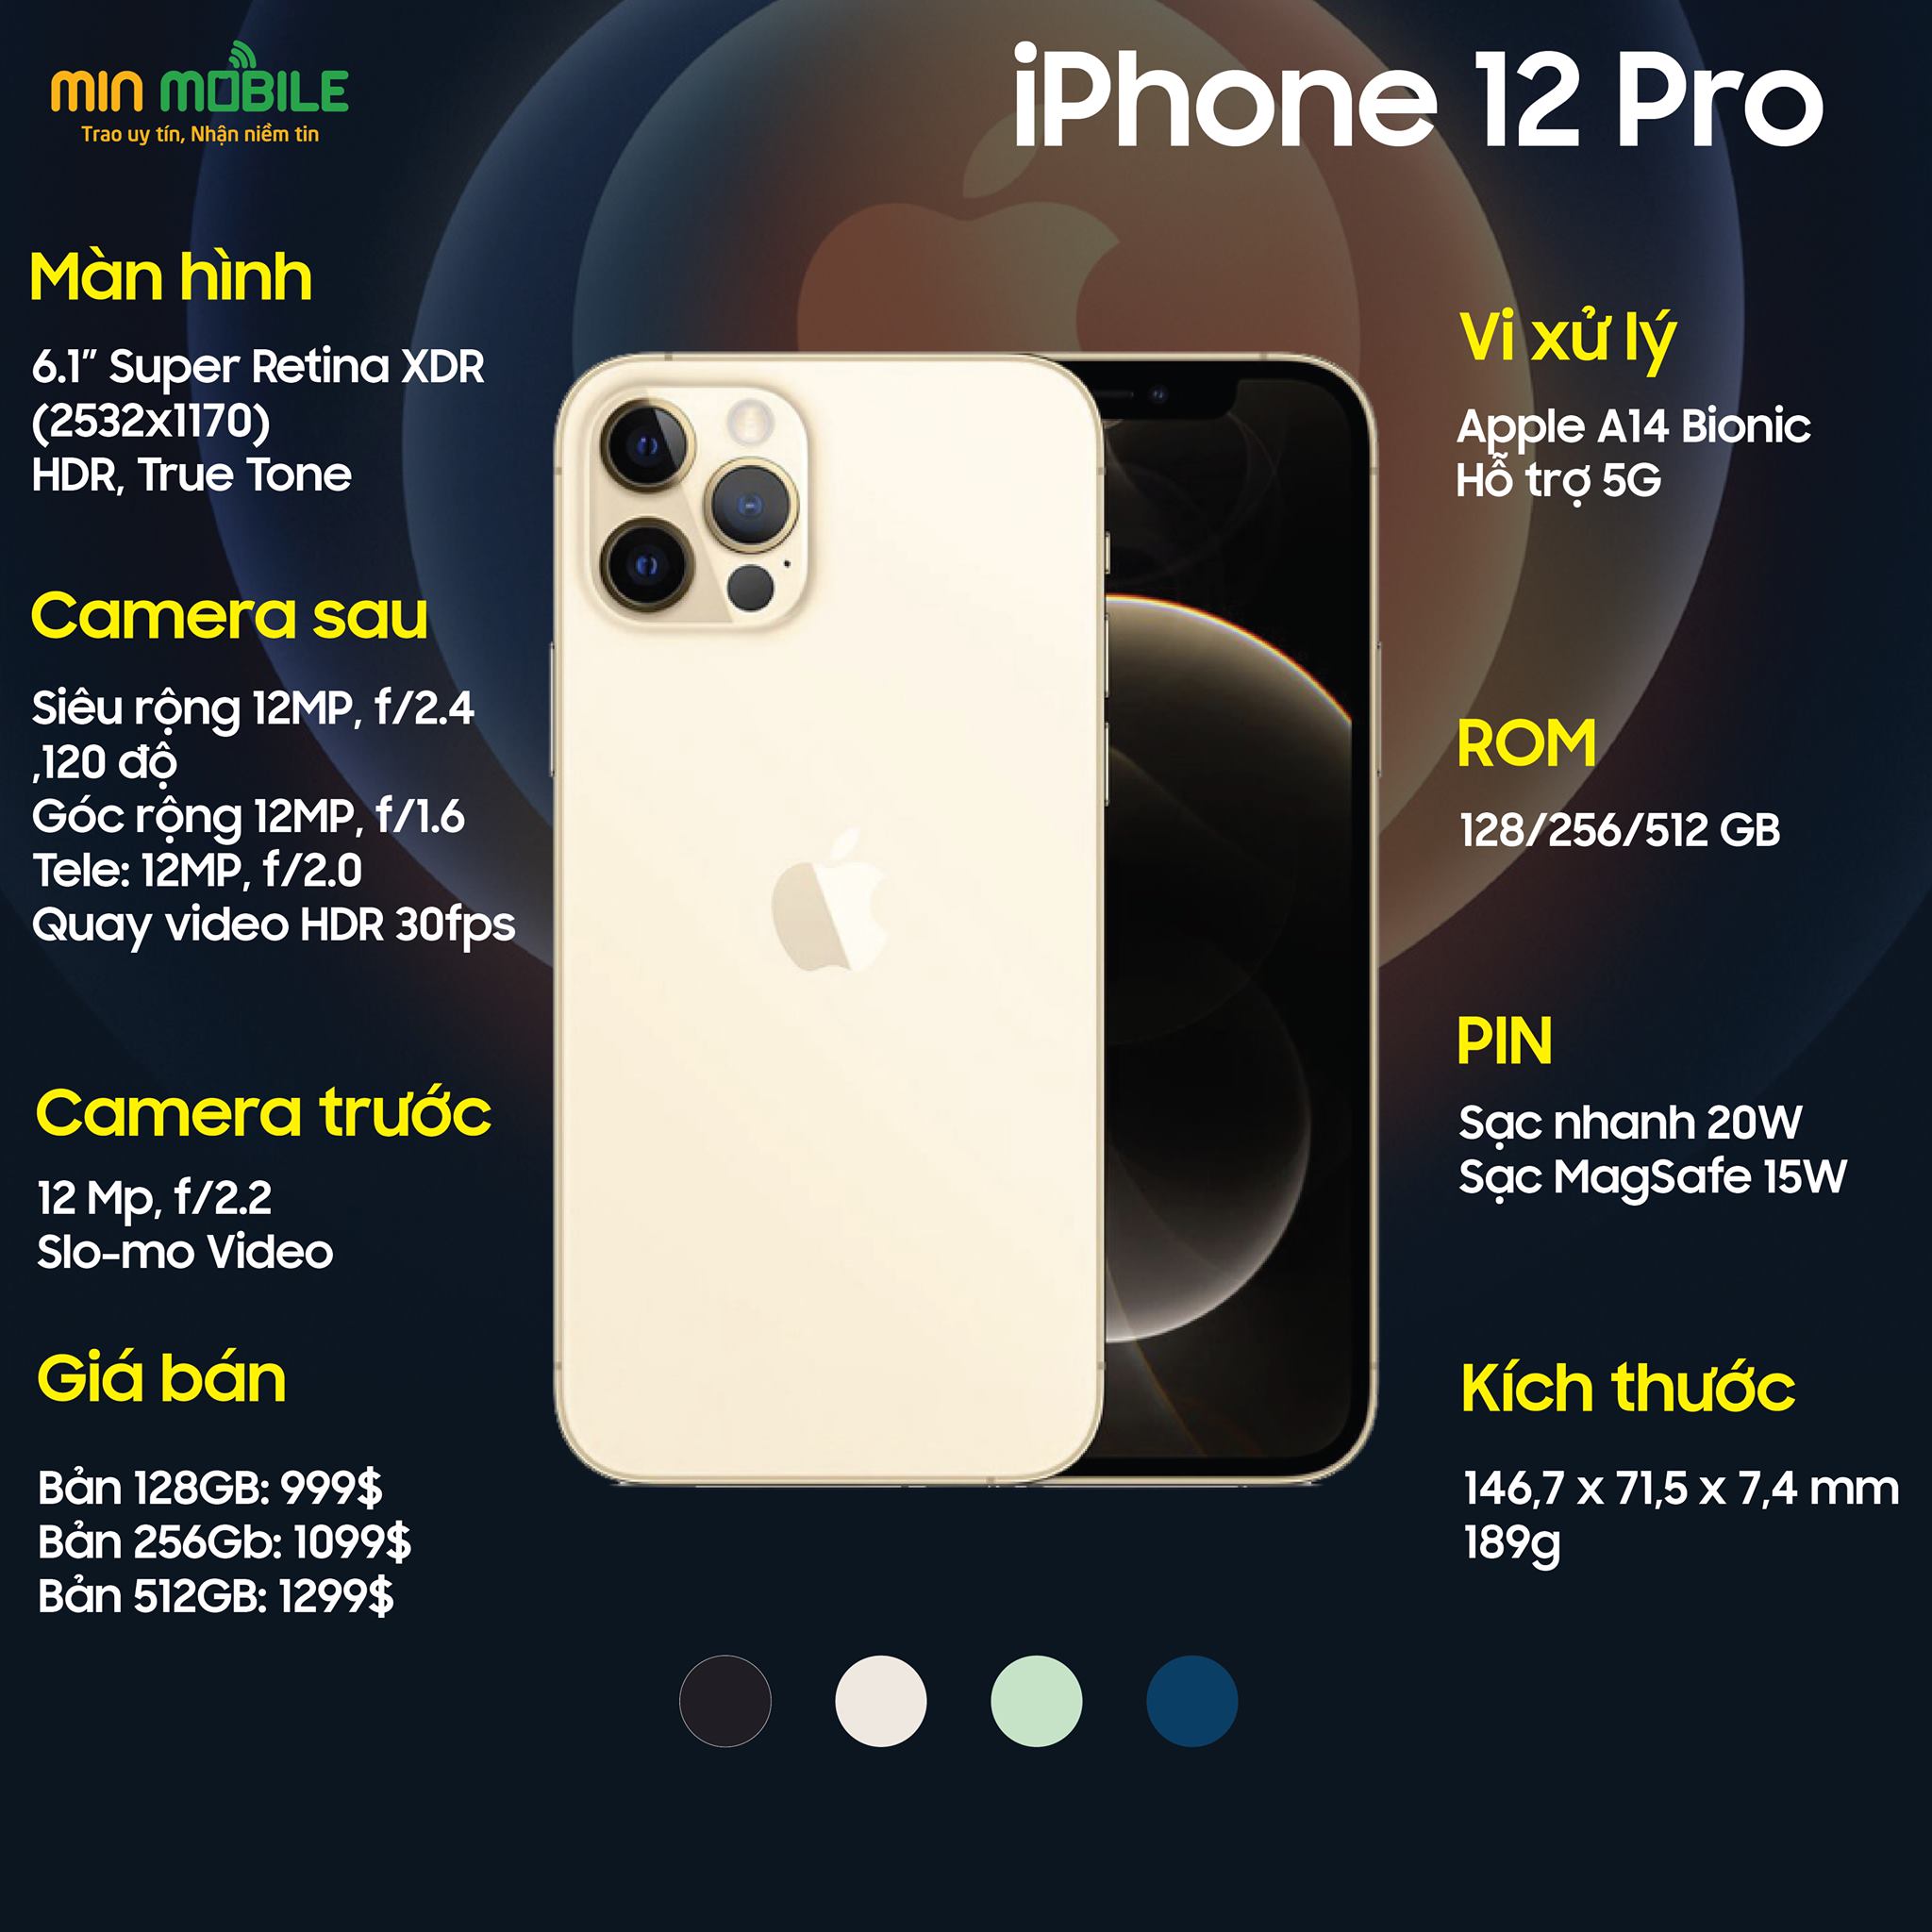 Thông số chi tiết của iPhone 12 Pro 